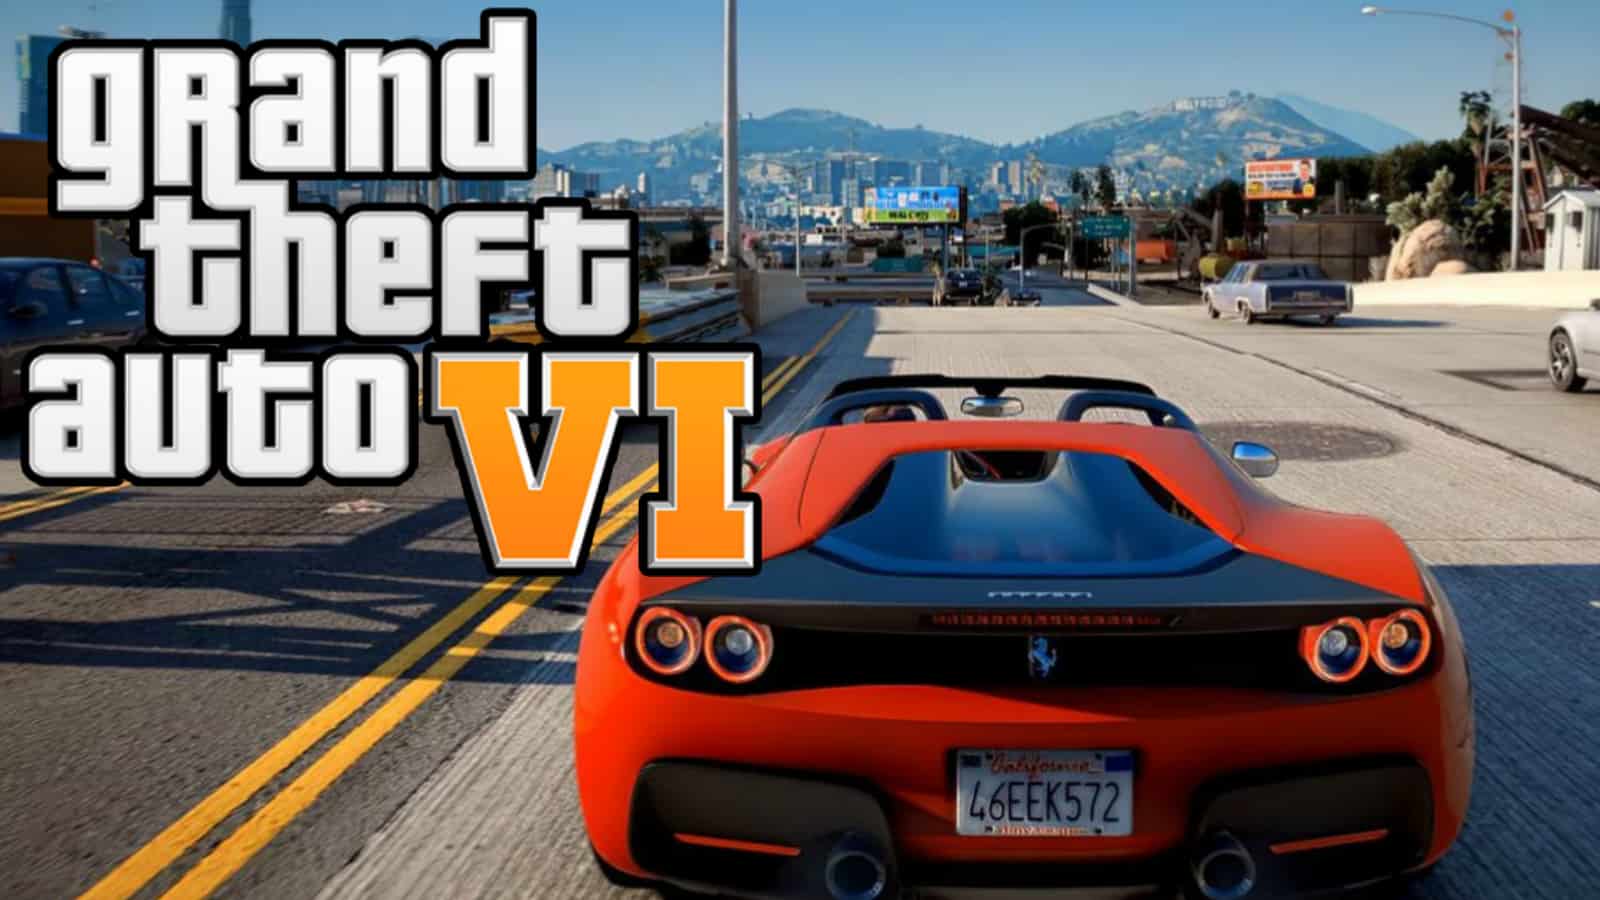 Grand Theft Auto 6 vai ser o jogo mais caro de sempre - Leak